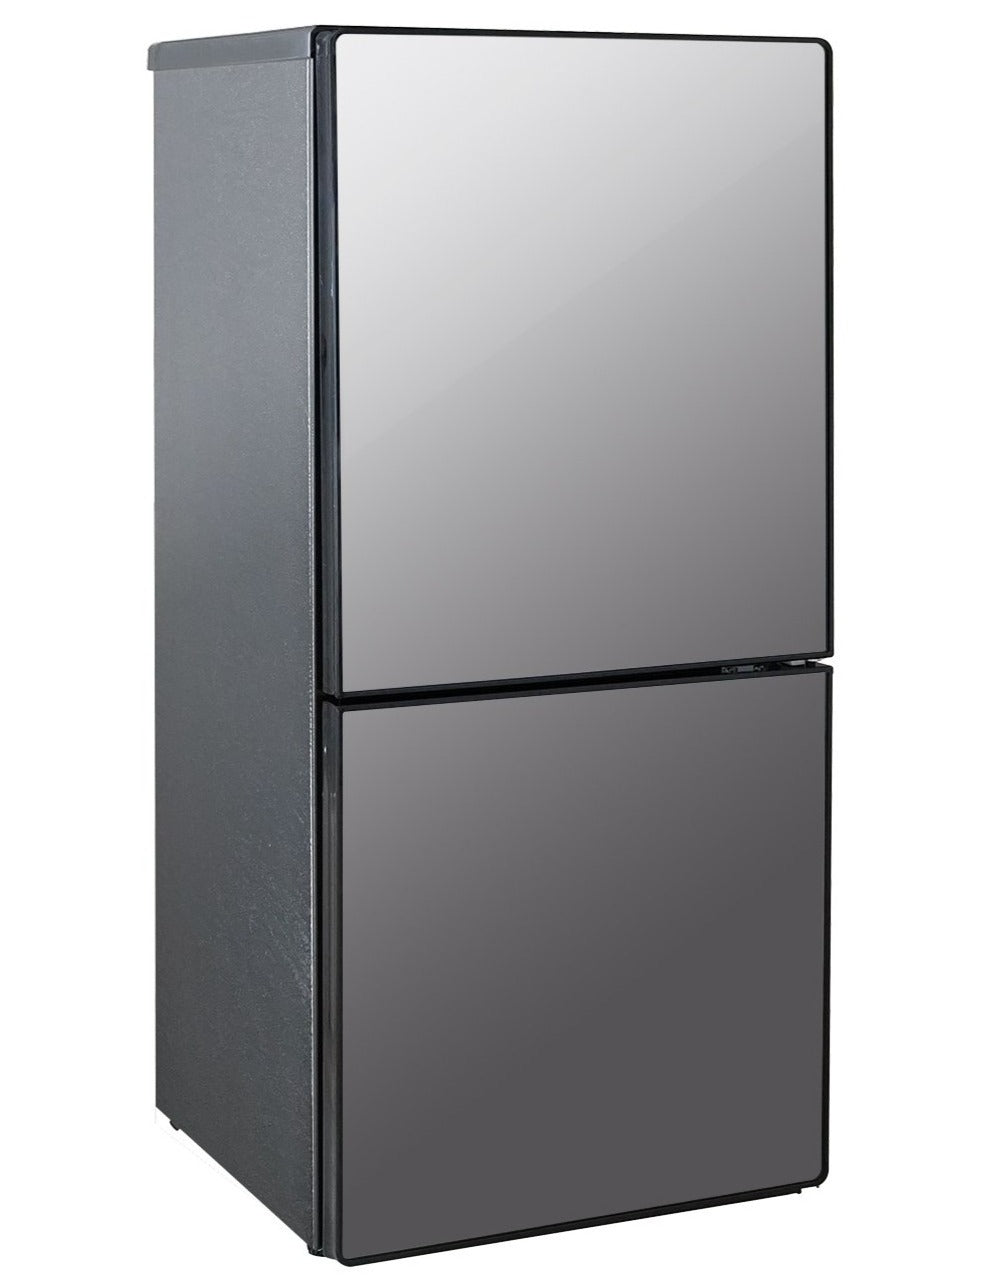 【美品】2021年製ツインバード冷凍冷蔵庫 110L